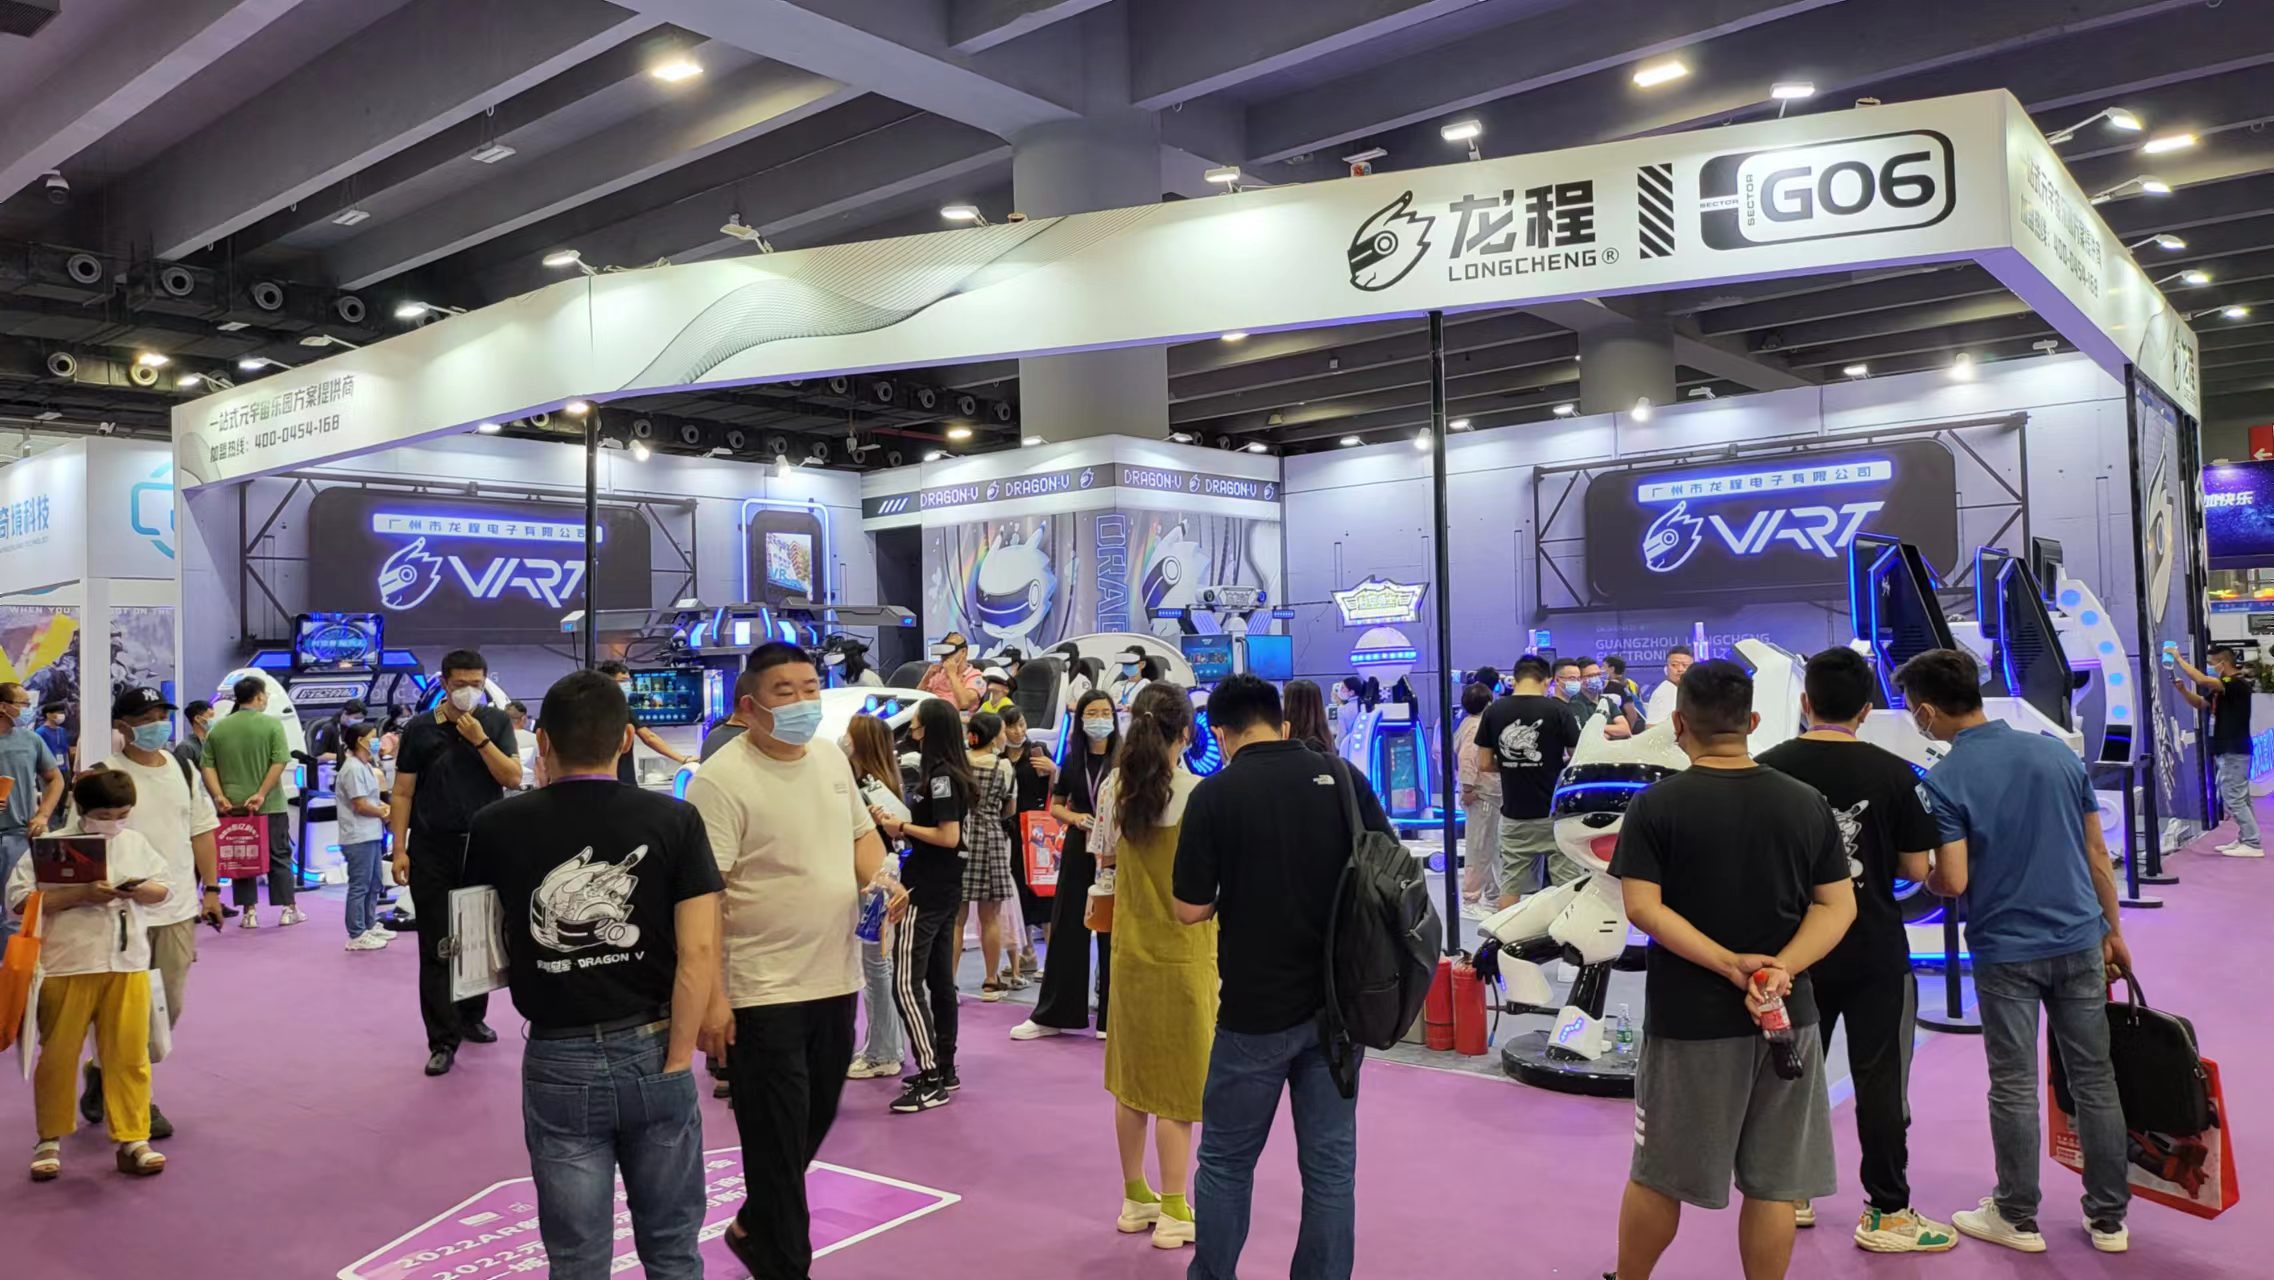 VART VR |Guangzhou Metaverse Egzibisyon Booth G06 reyèlman popilè